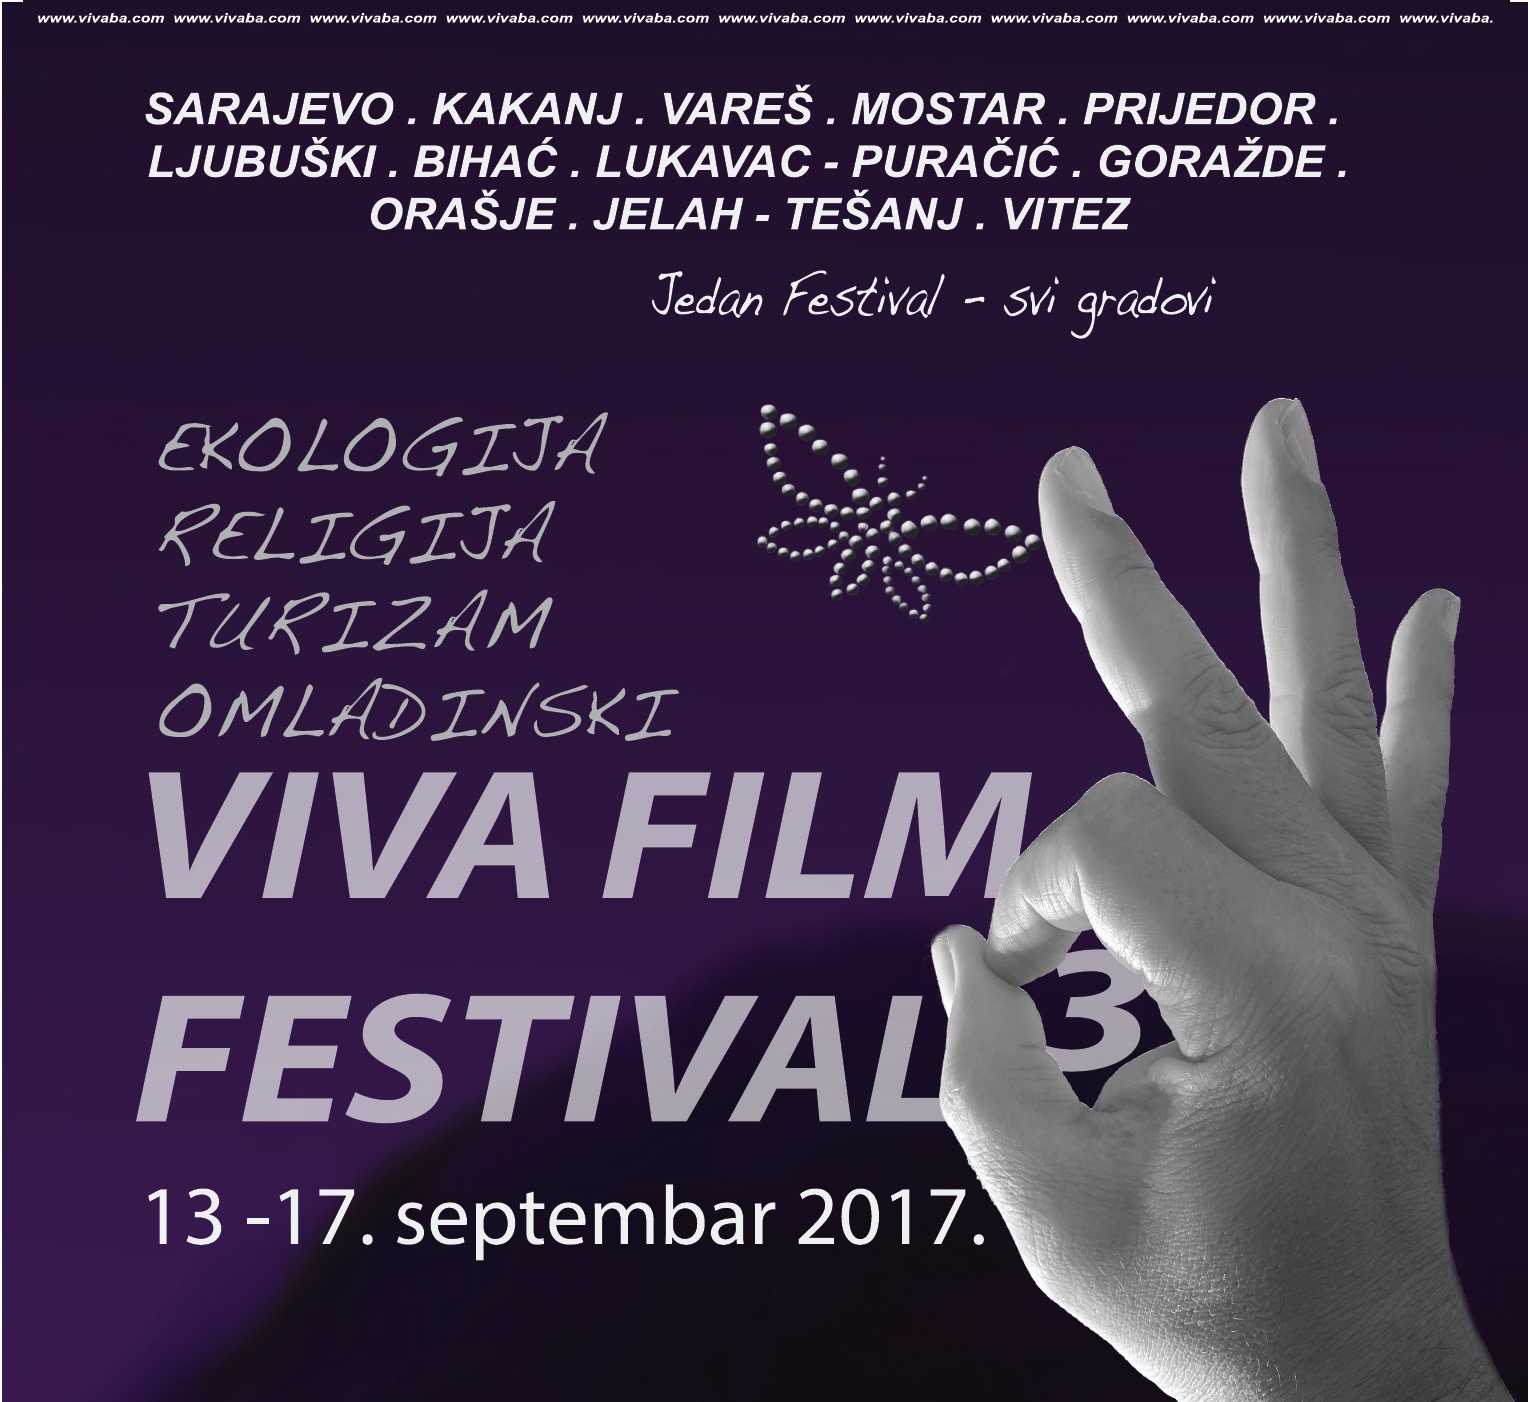 Sutra počinje VIVA FILM FESTIVAL – Projekcije u kultnom školskom centru “Europa” u 12:00 sati